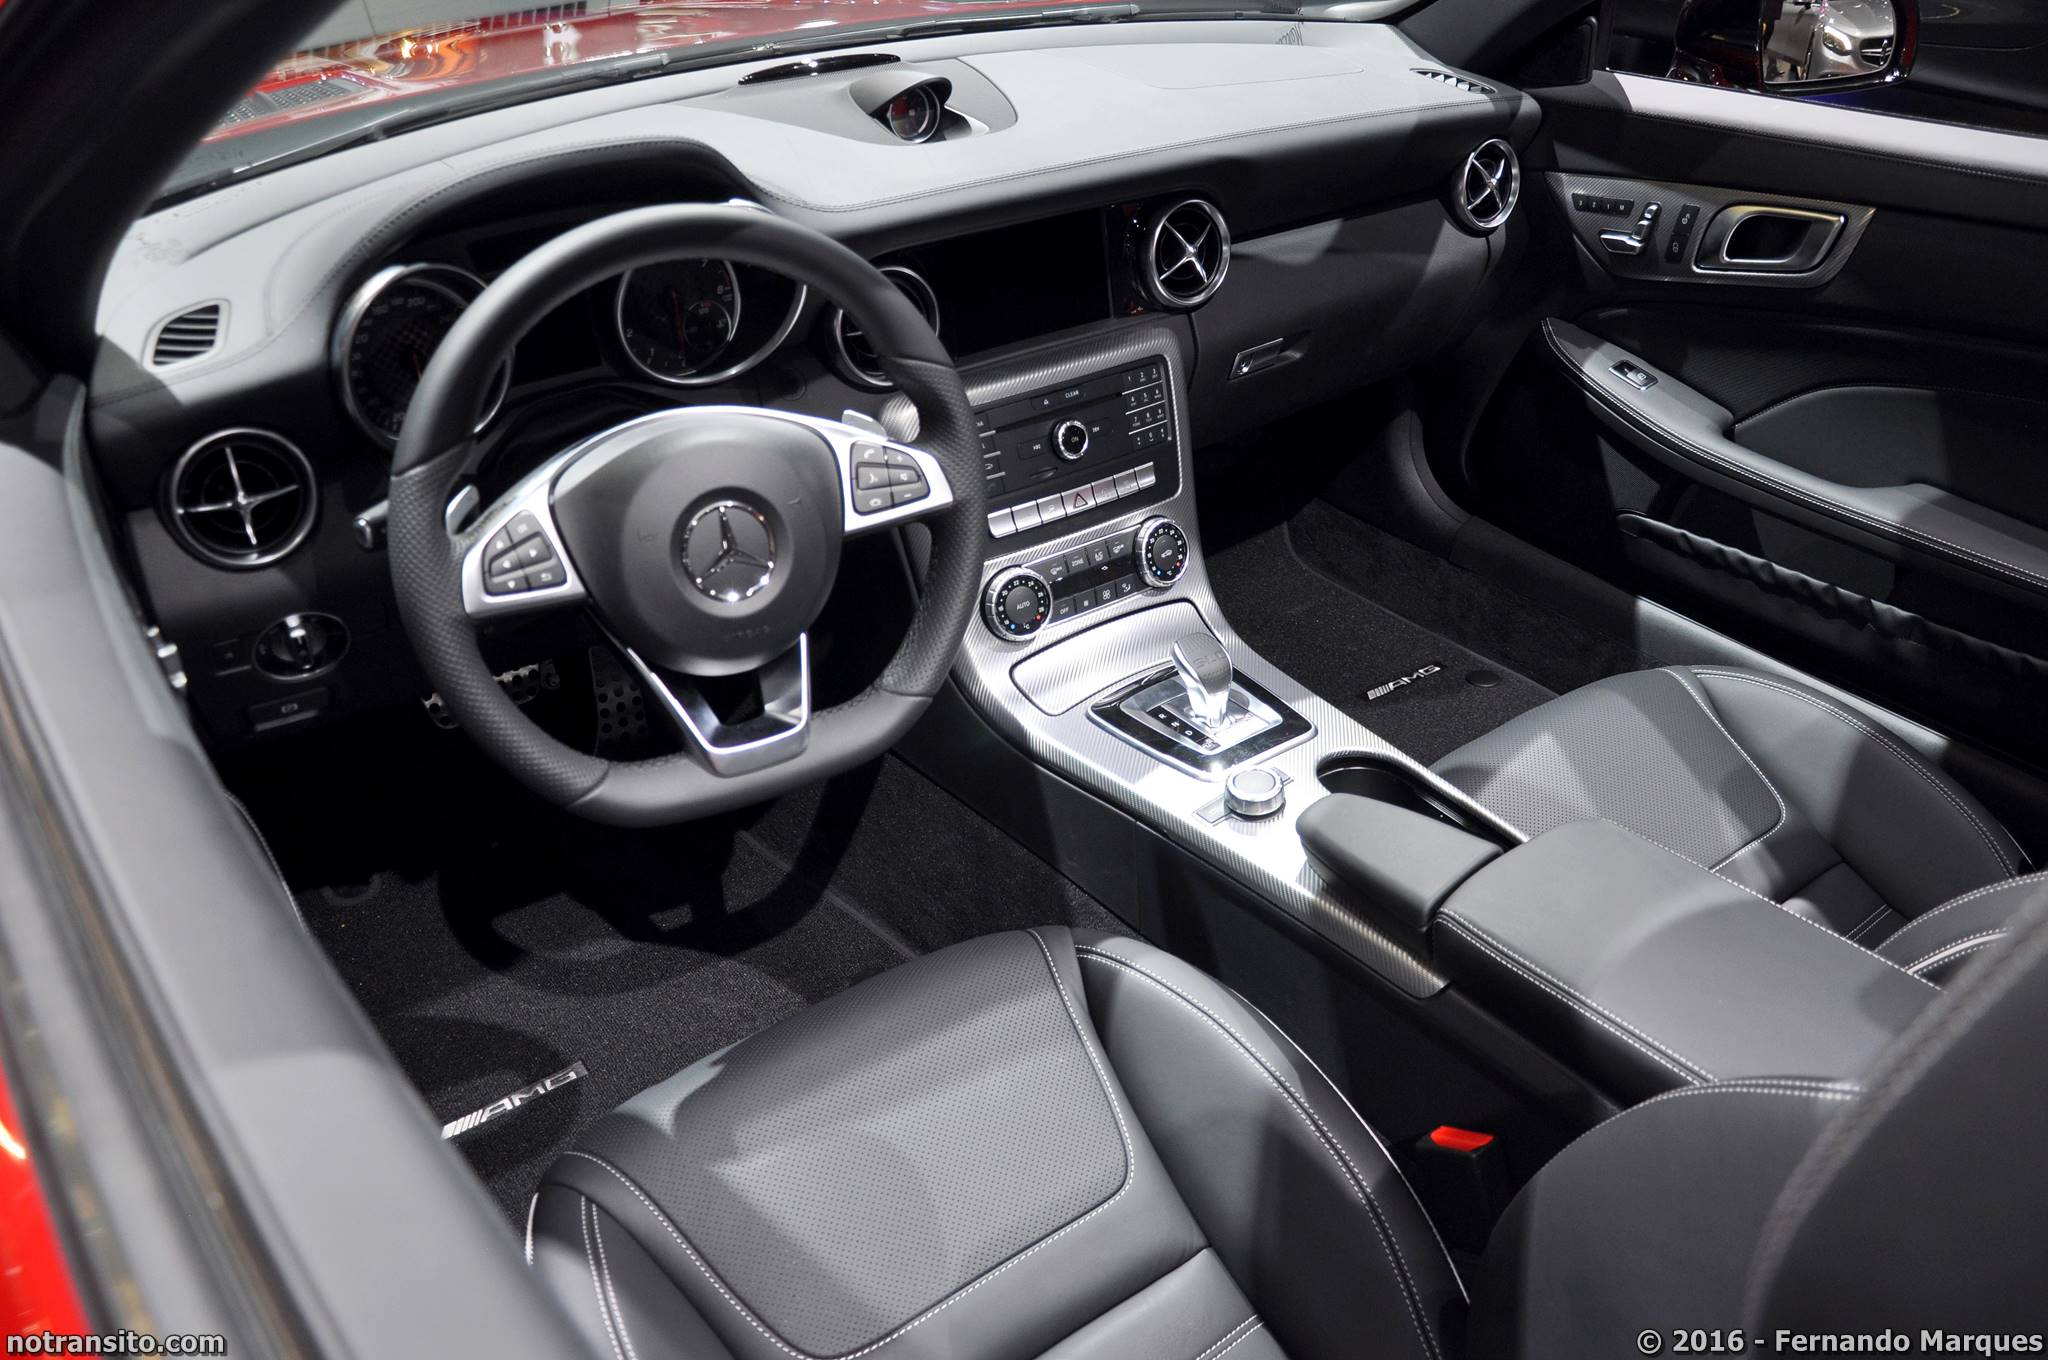 Mercedes-AMG SLC 43 Salão do Automóvel 2016